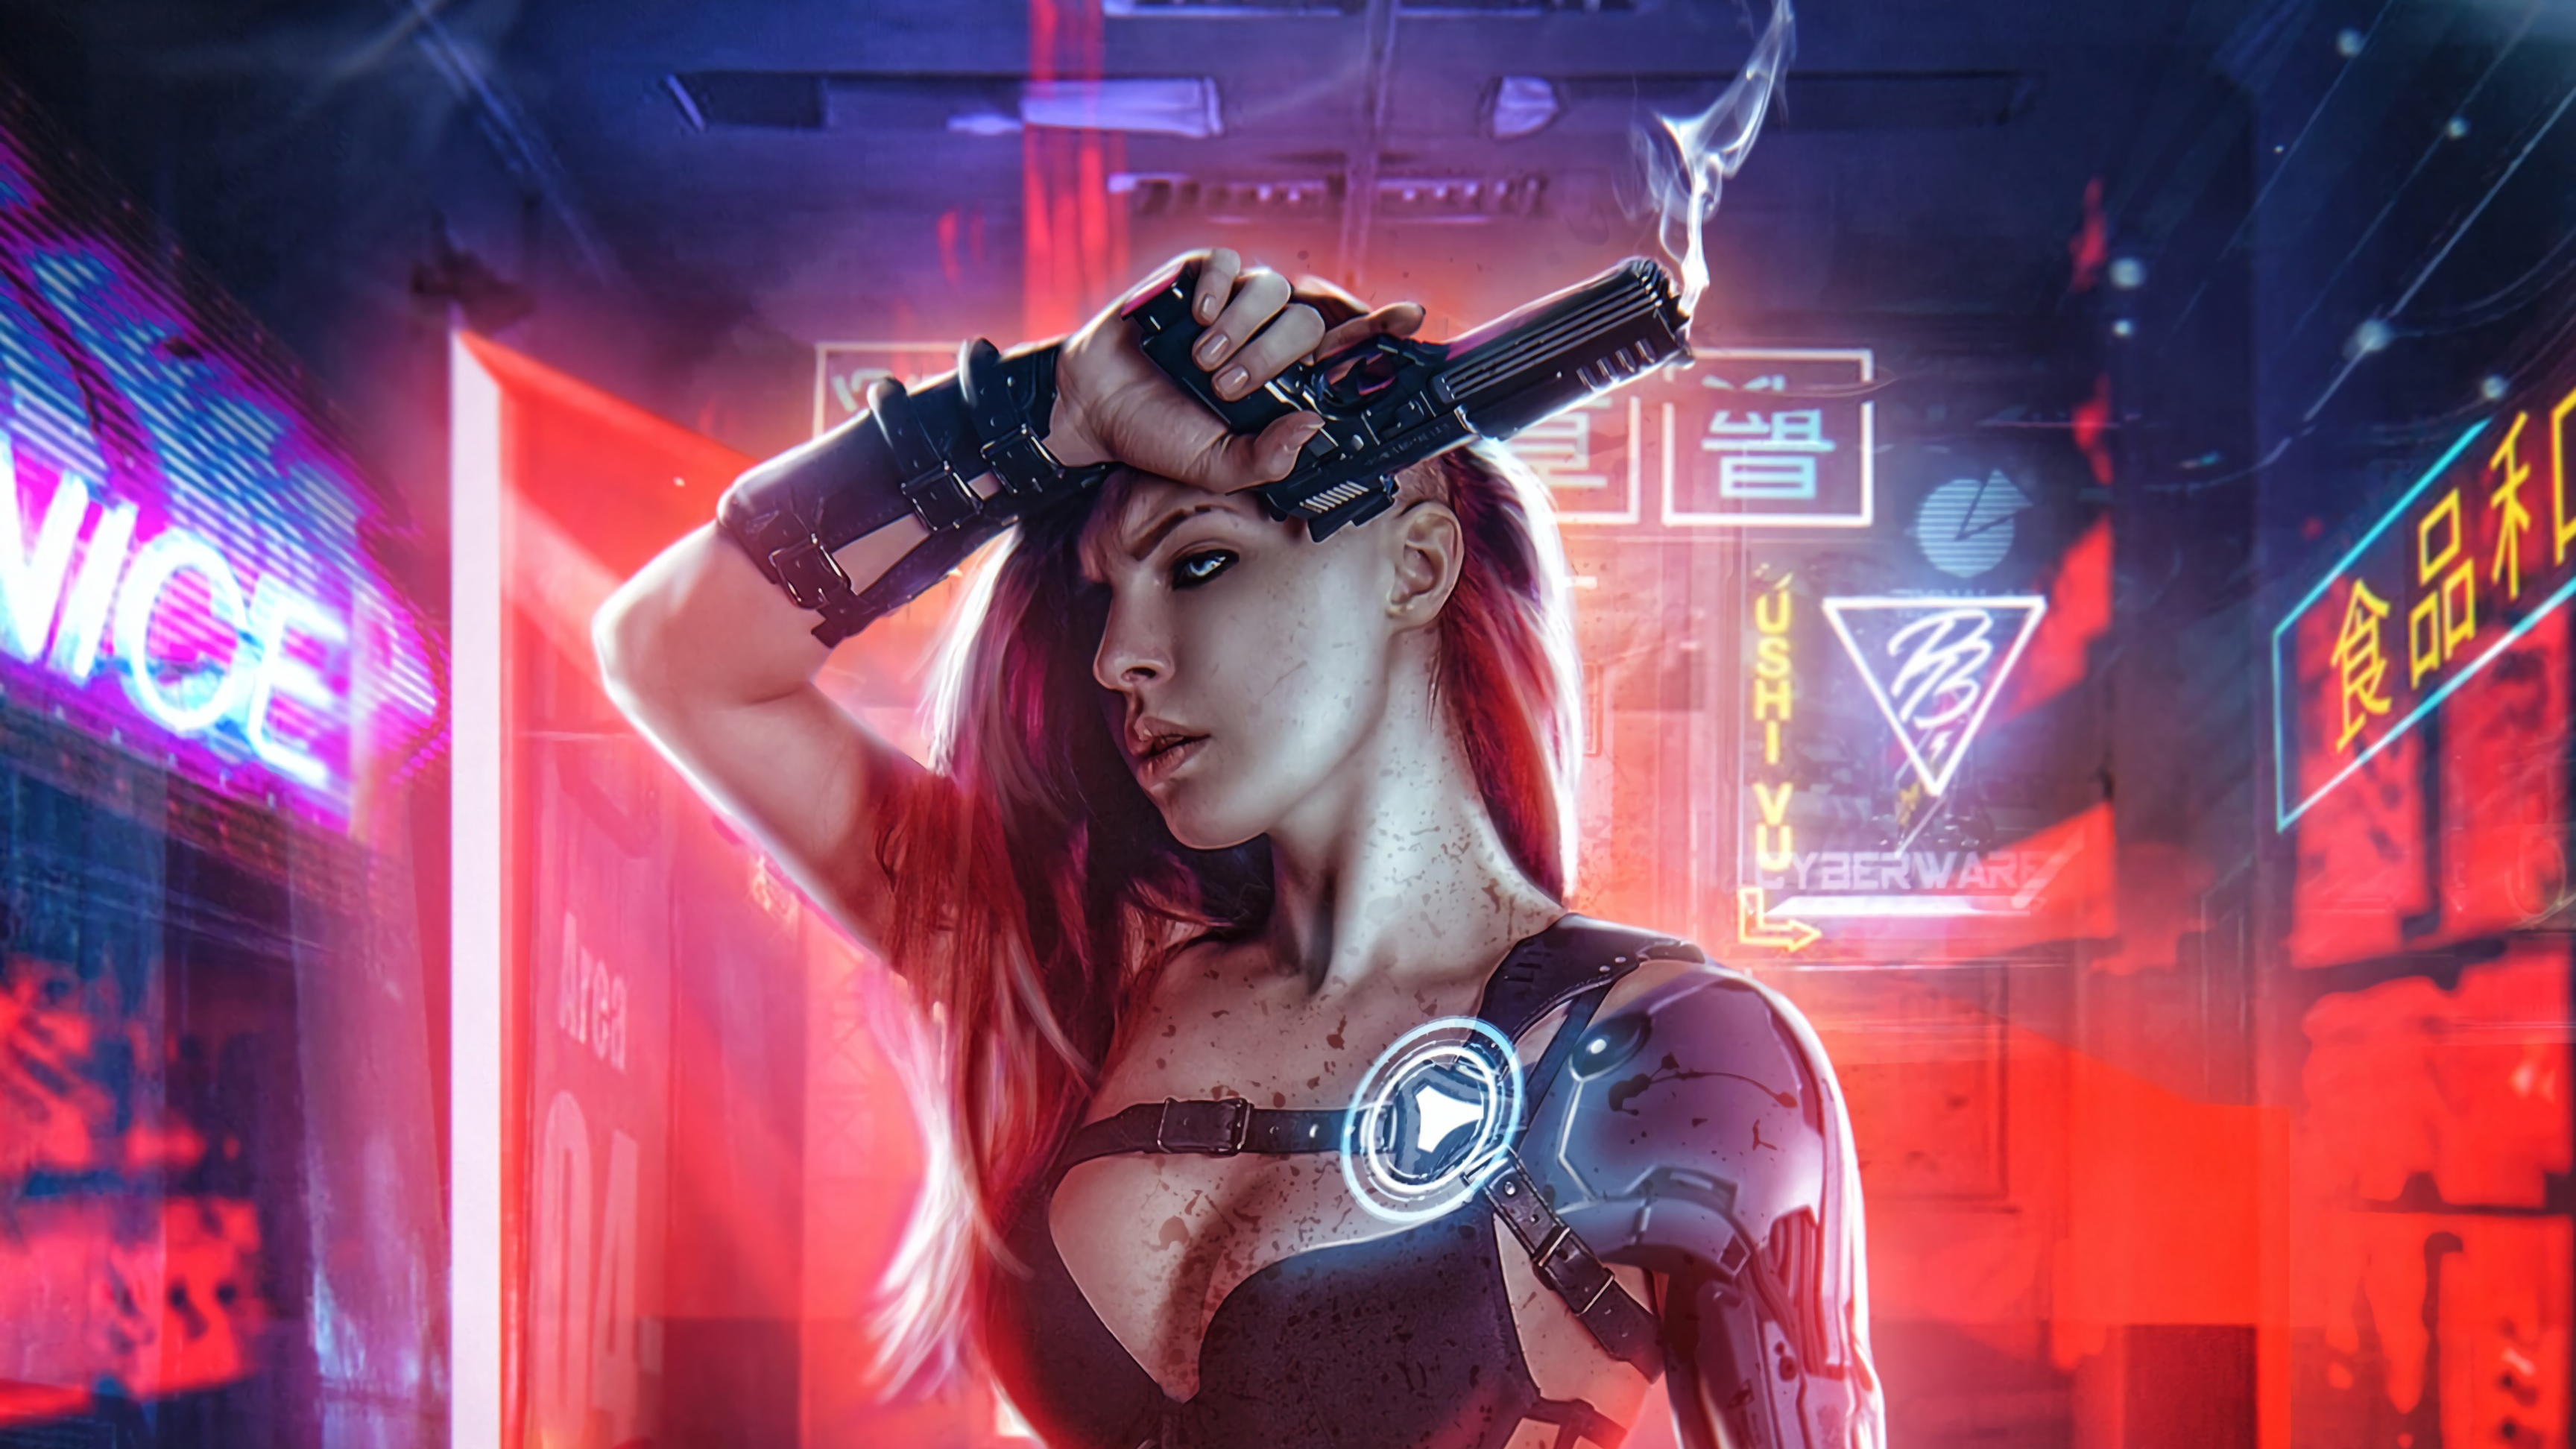 Cyberpunk Girl With Gun 4k Hd Artist 4k Wallpapers Images 4457